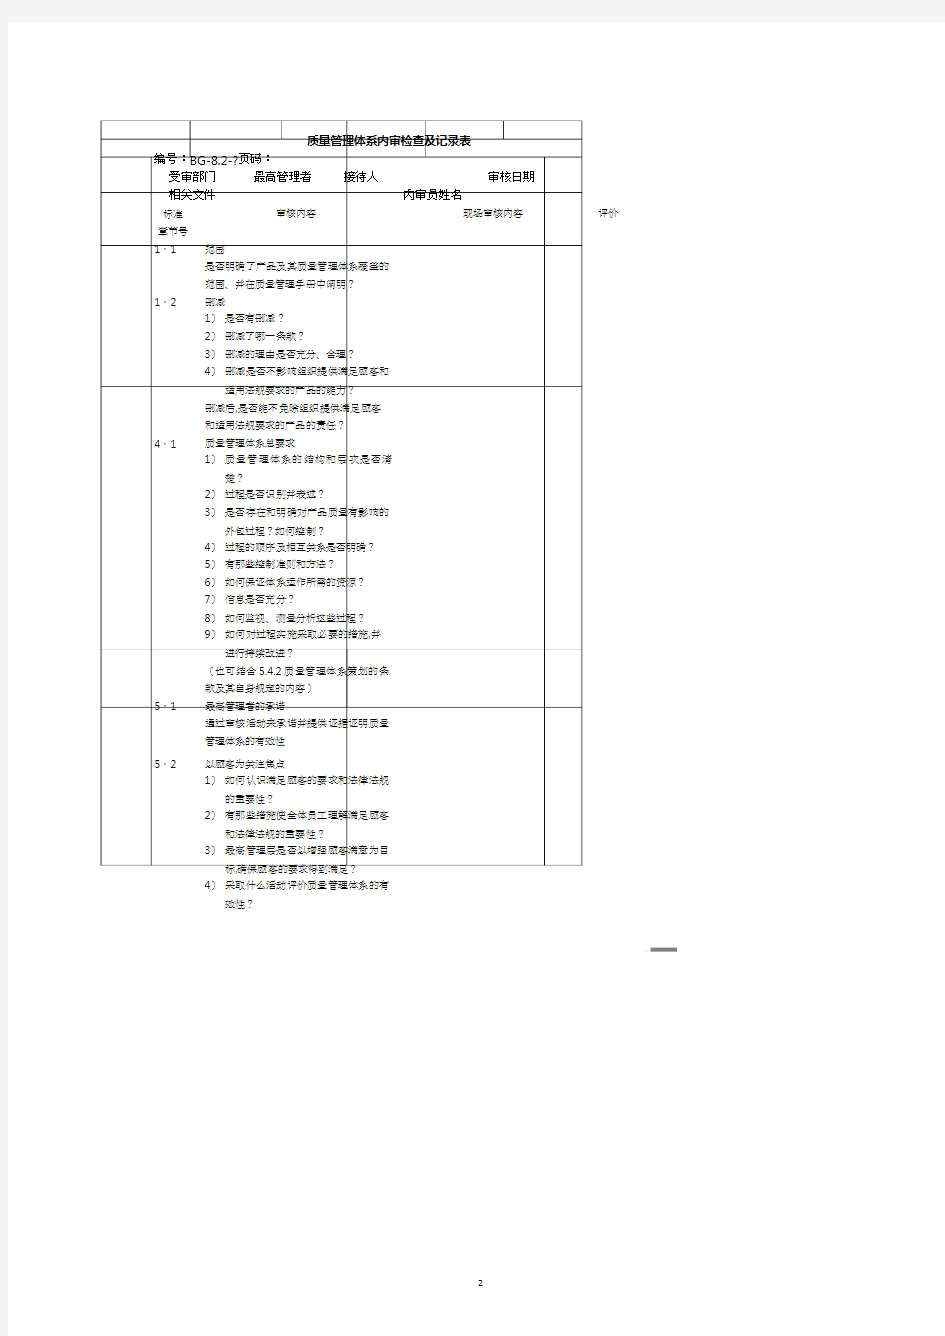 质量管理体系内审检查及记录表.pdf